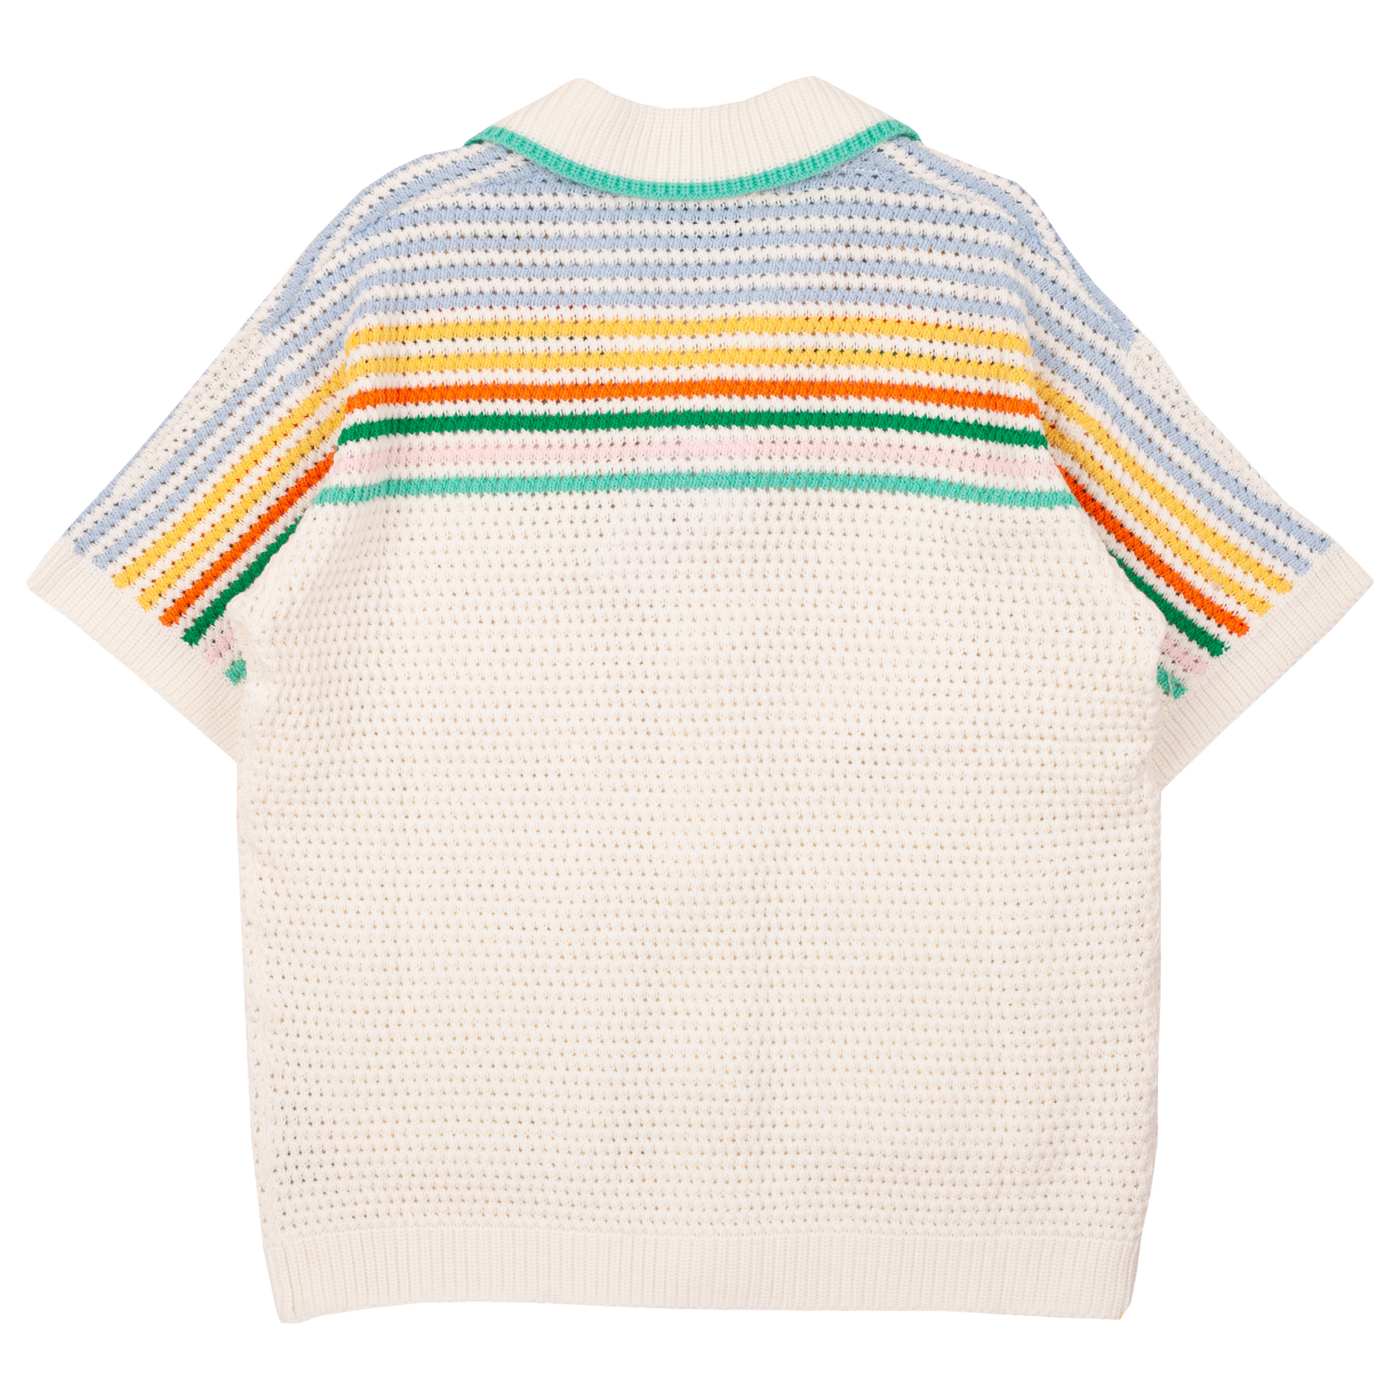 Tennis Crochet Shirt